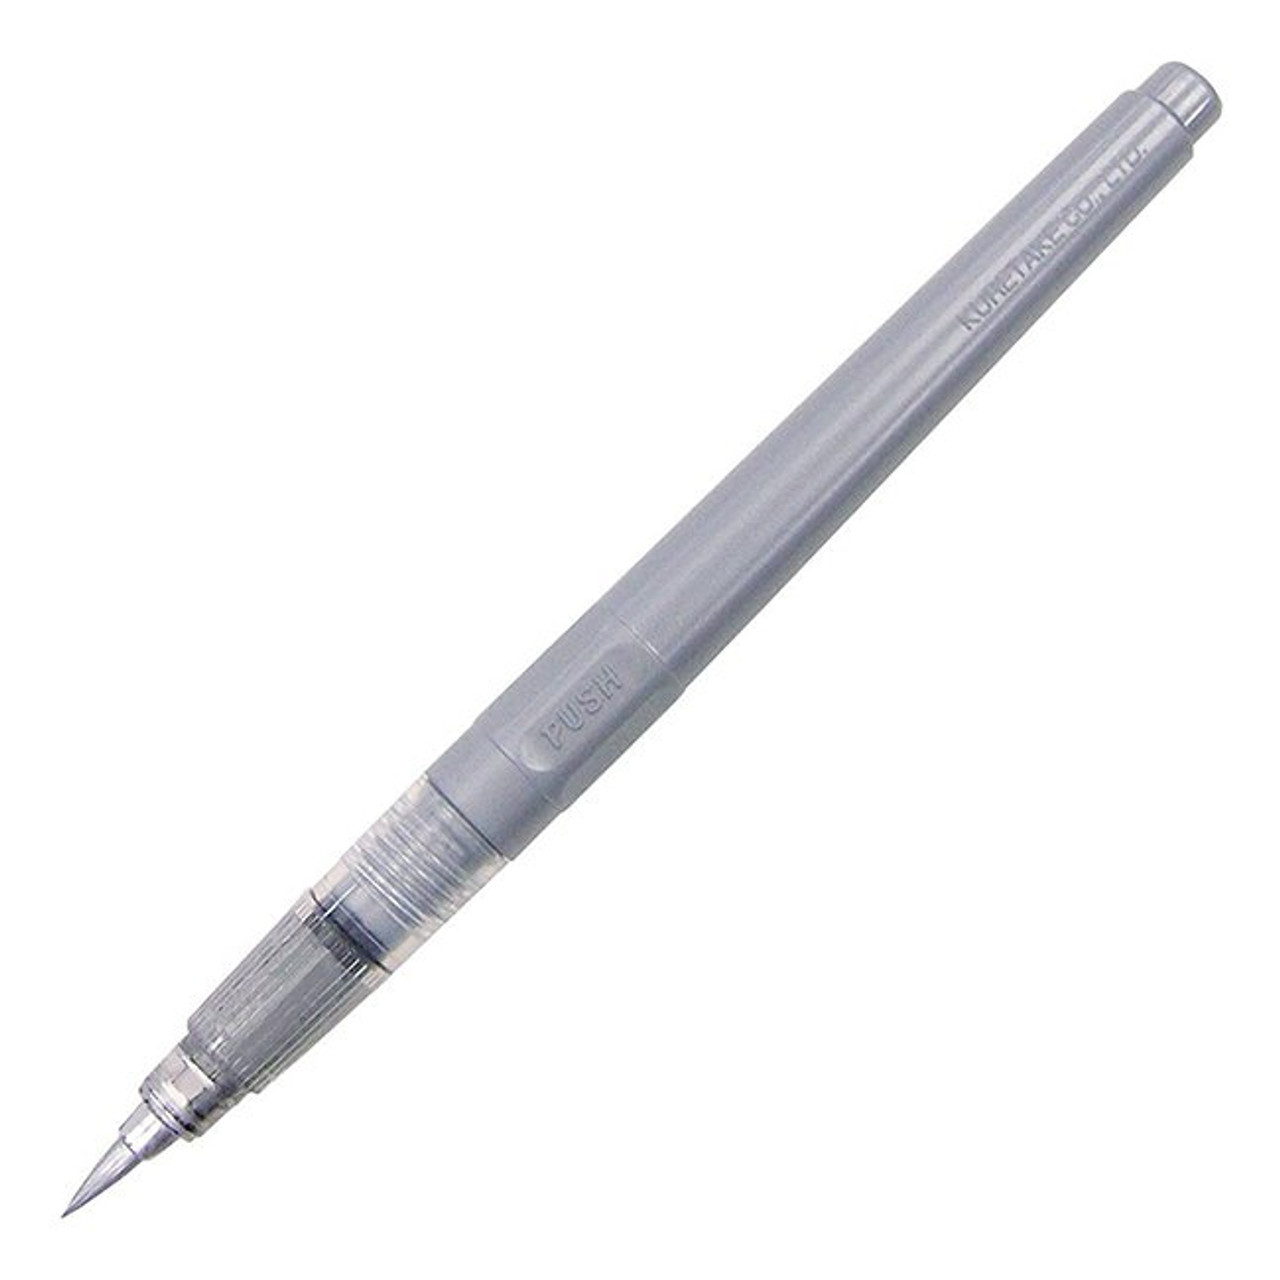 Kuretake Brush Pen No. 61, Silver - Artist & Craftsman Supply